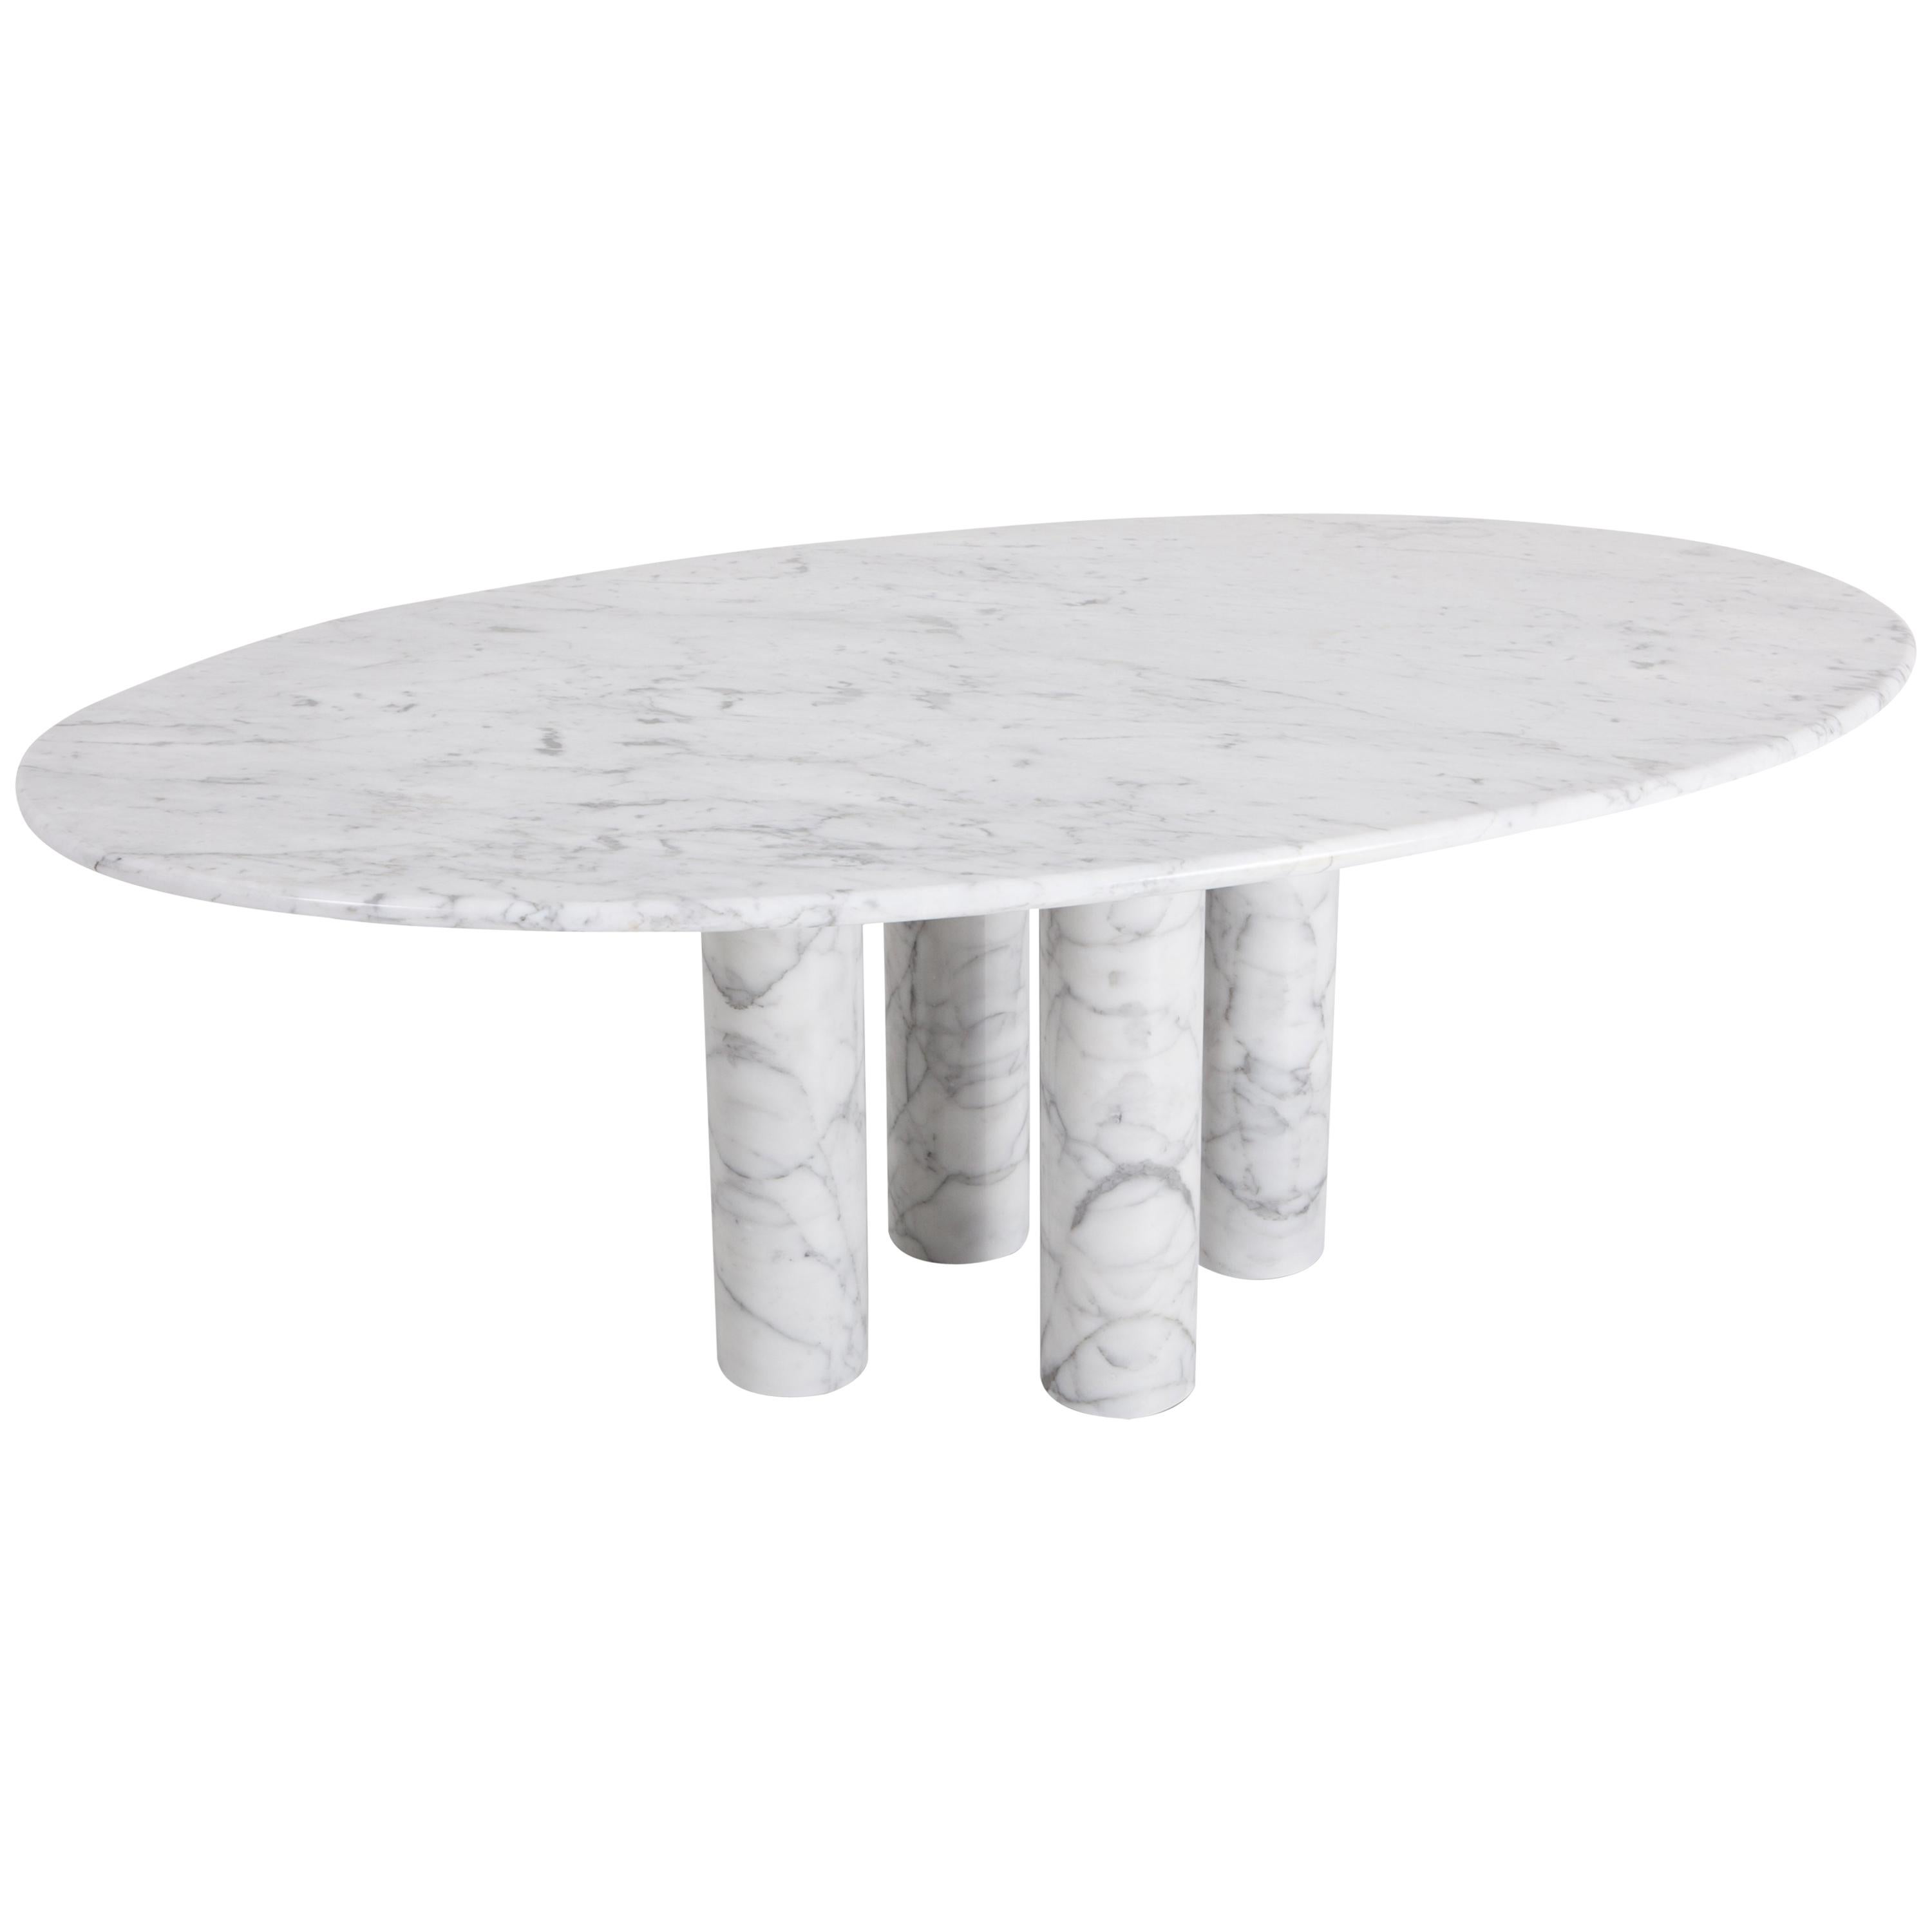 Mario Bellini Il Colonnata Oval Dining Table in Carrara Marble for Cassina